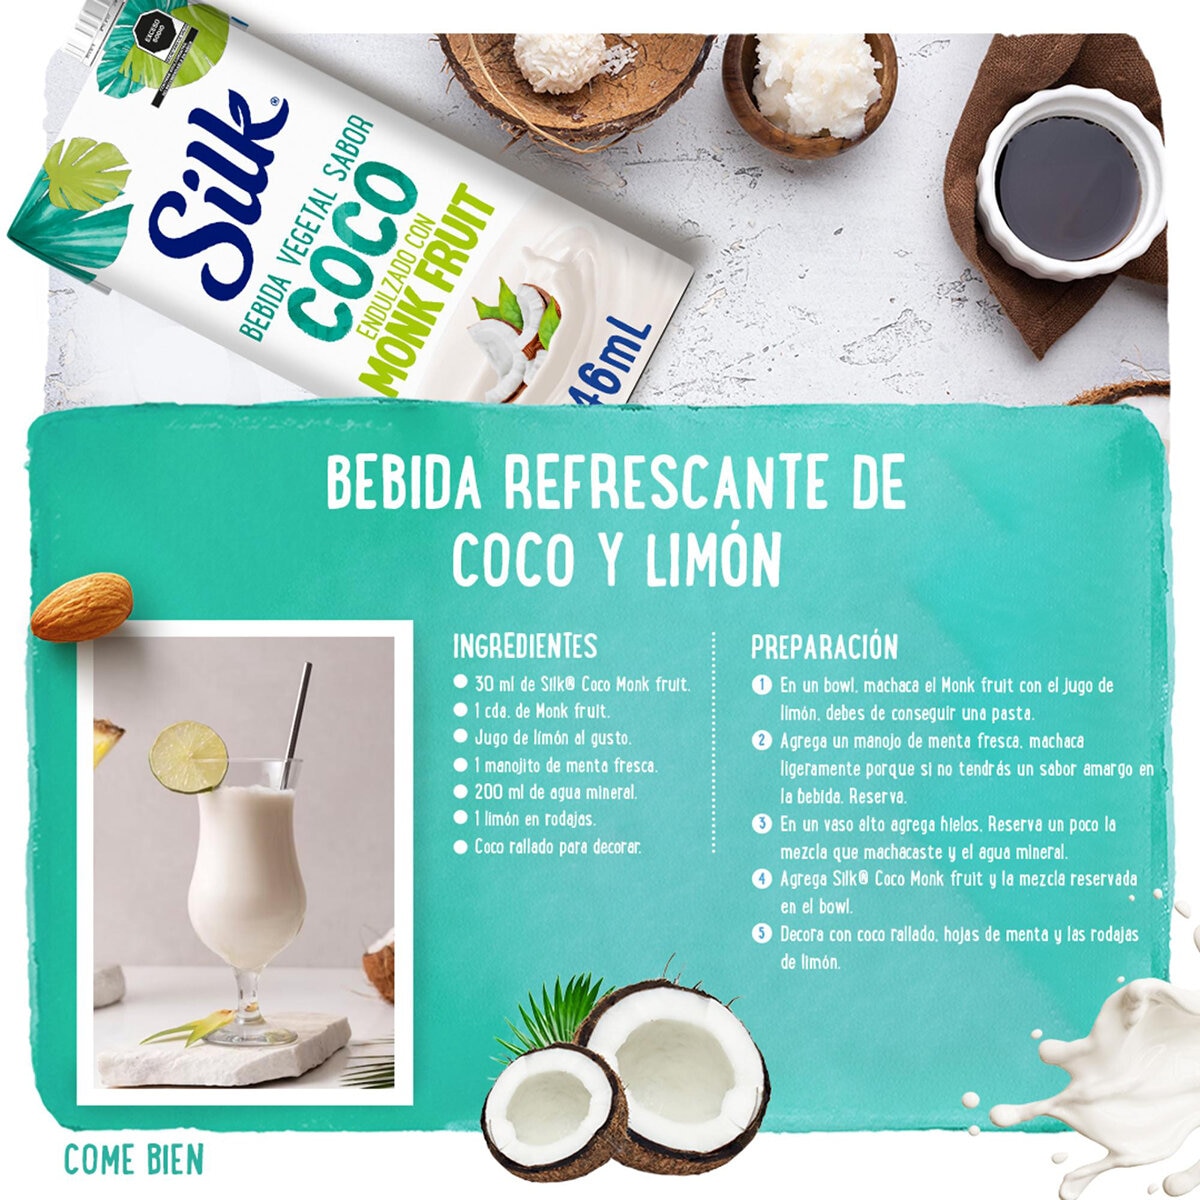 Silk Bebida de Coco Sin Azúcar Endulzada con Fruta del Monje 6 pzas de 946 ml